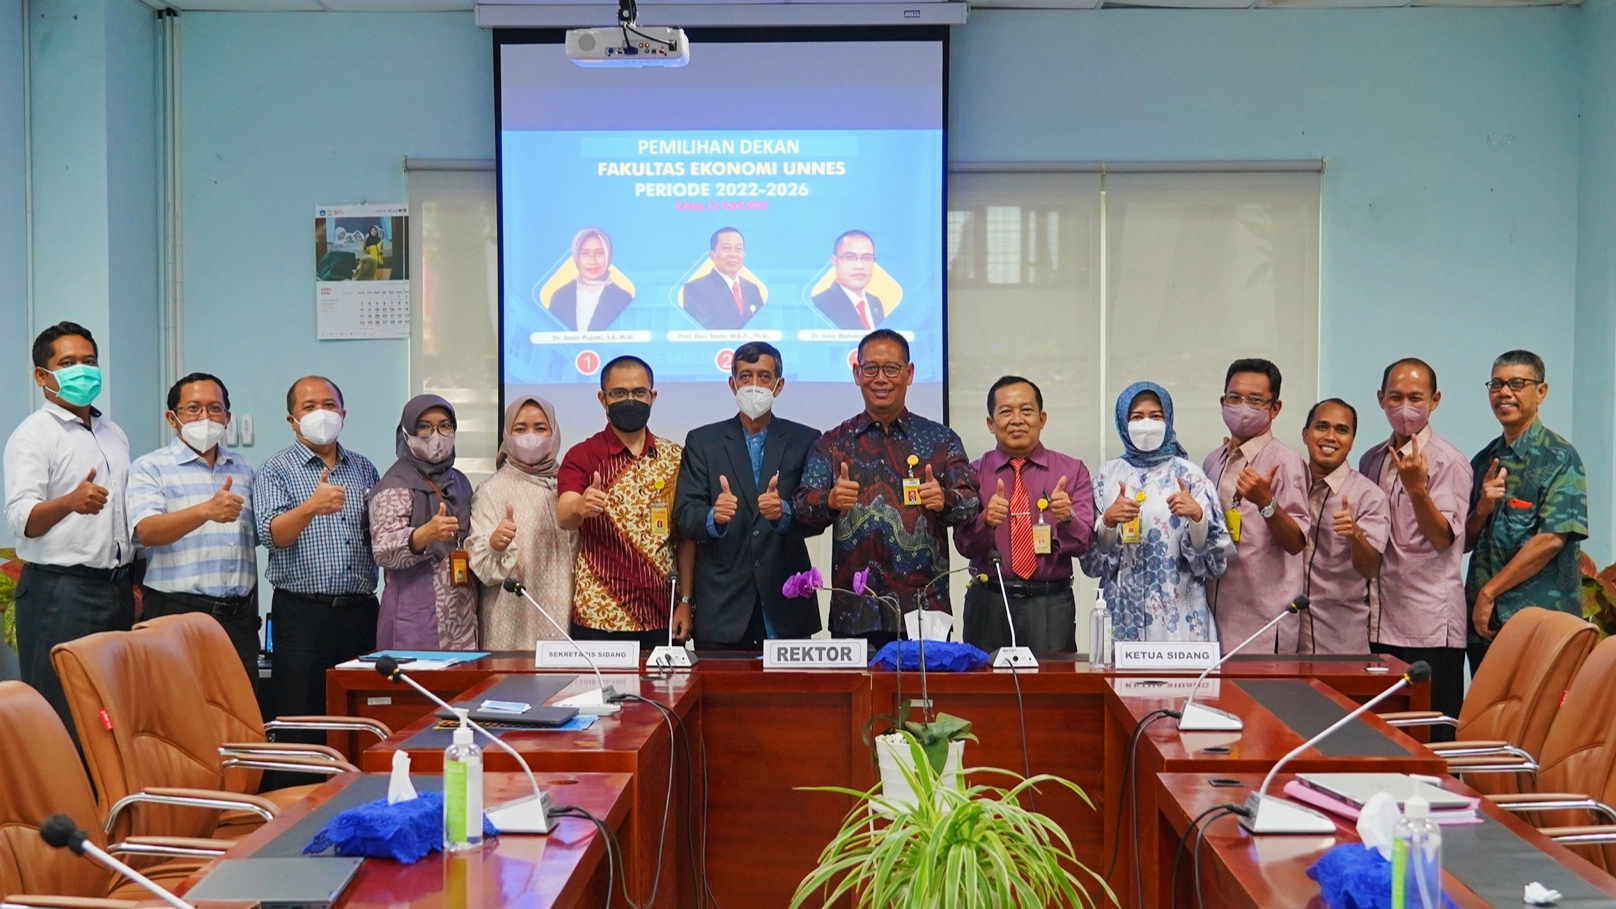 Prof Heri Yanto Kembali Terpilih menjadi Dekan FE UNNES Periode 2022-2026